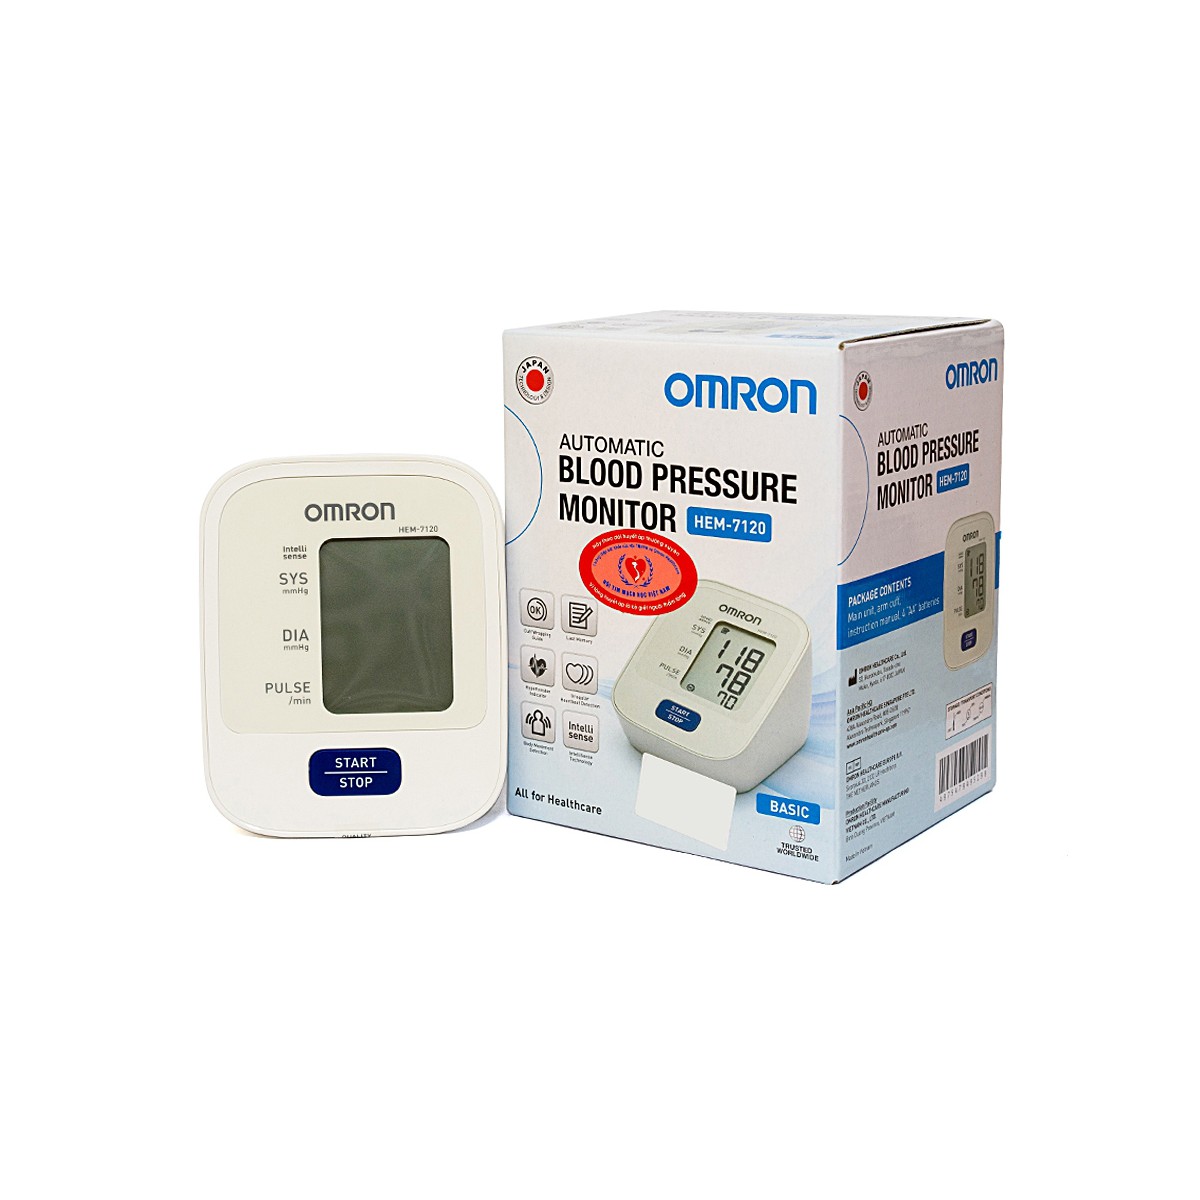 Máy đo huyết áp bắp tay OMRON HEM 7120 công nghệ Intellisense mới tự động hoàn toàn (NHẬT BẢN)